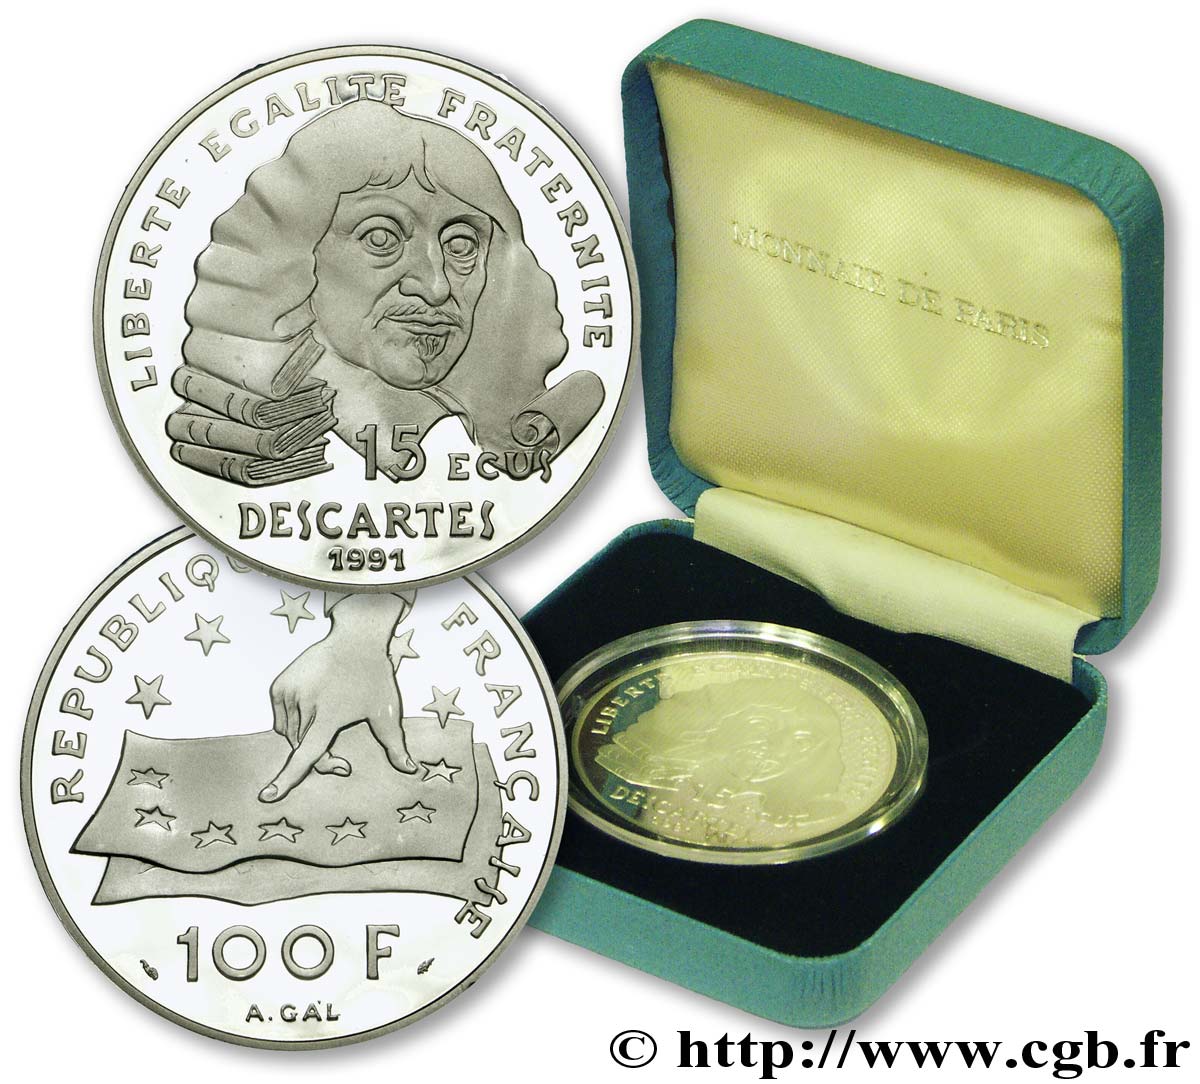 Belle Epreuve 15 écus / 100 francs - Descartes 1991  F.2001 01 ST 